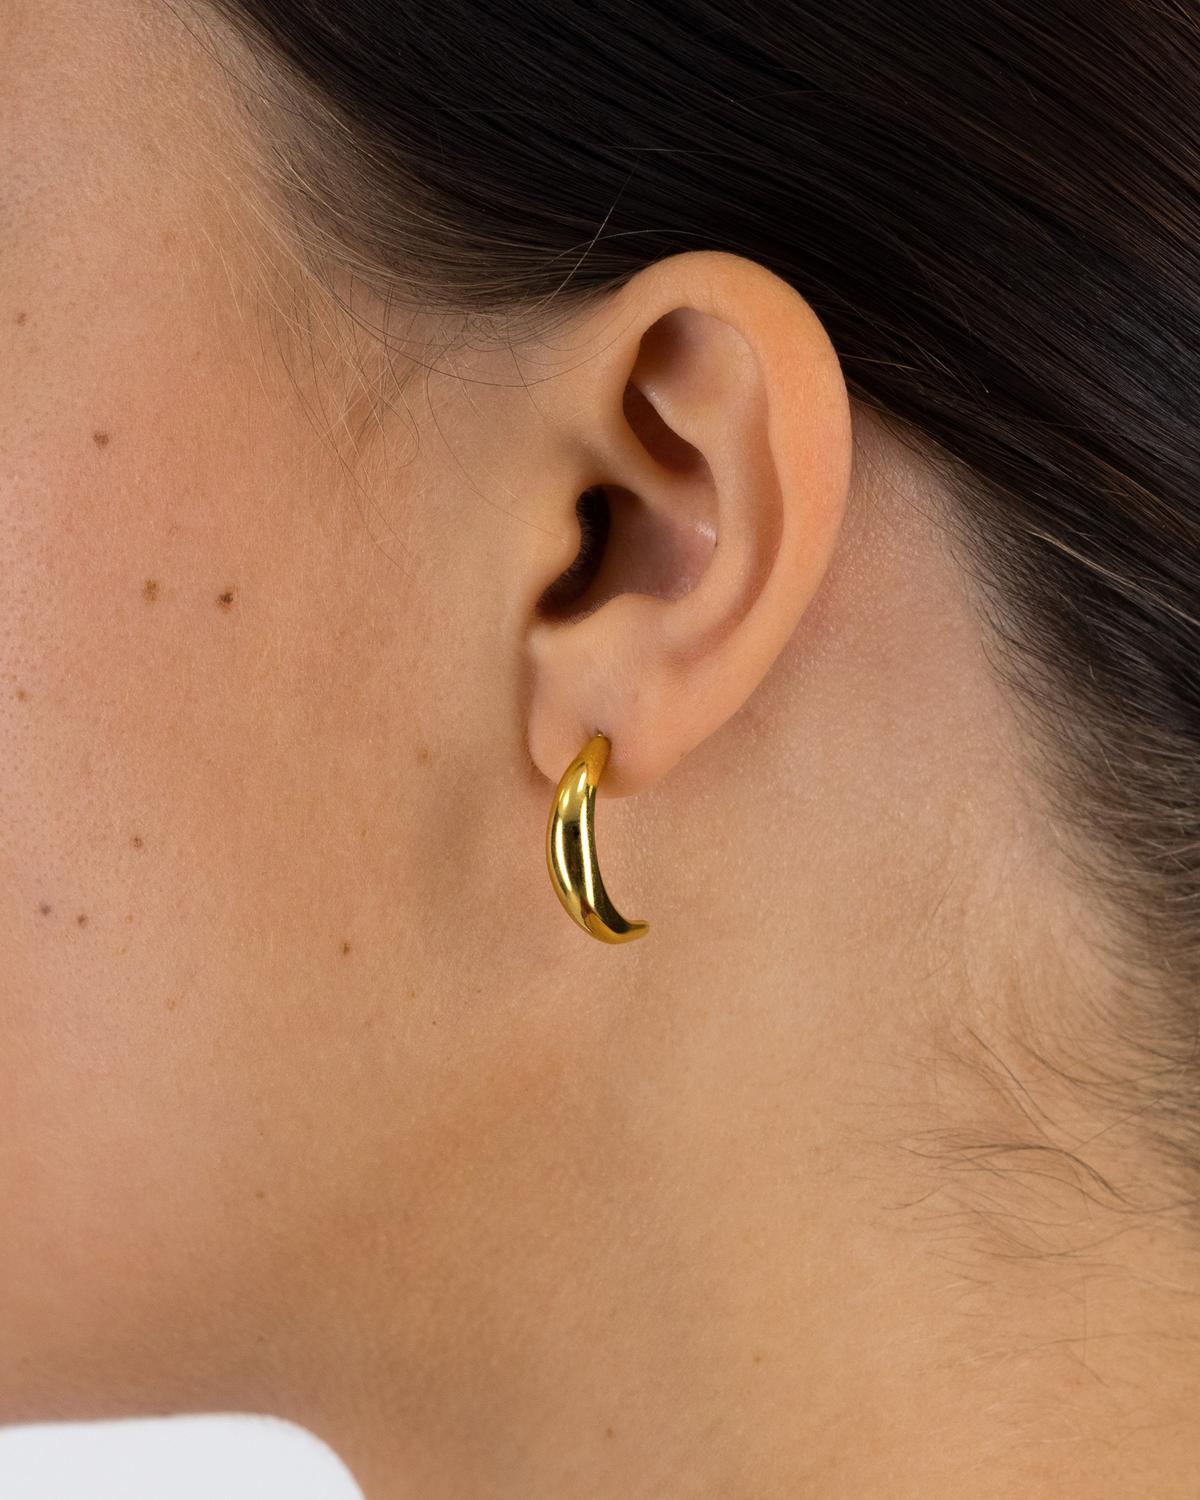 Old Khaki x byCara Women’s Moon Hoop Earrings  -  Gold